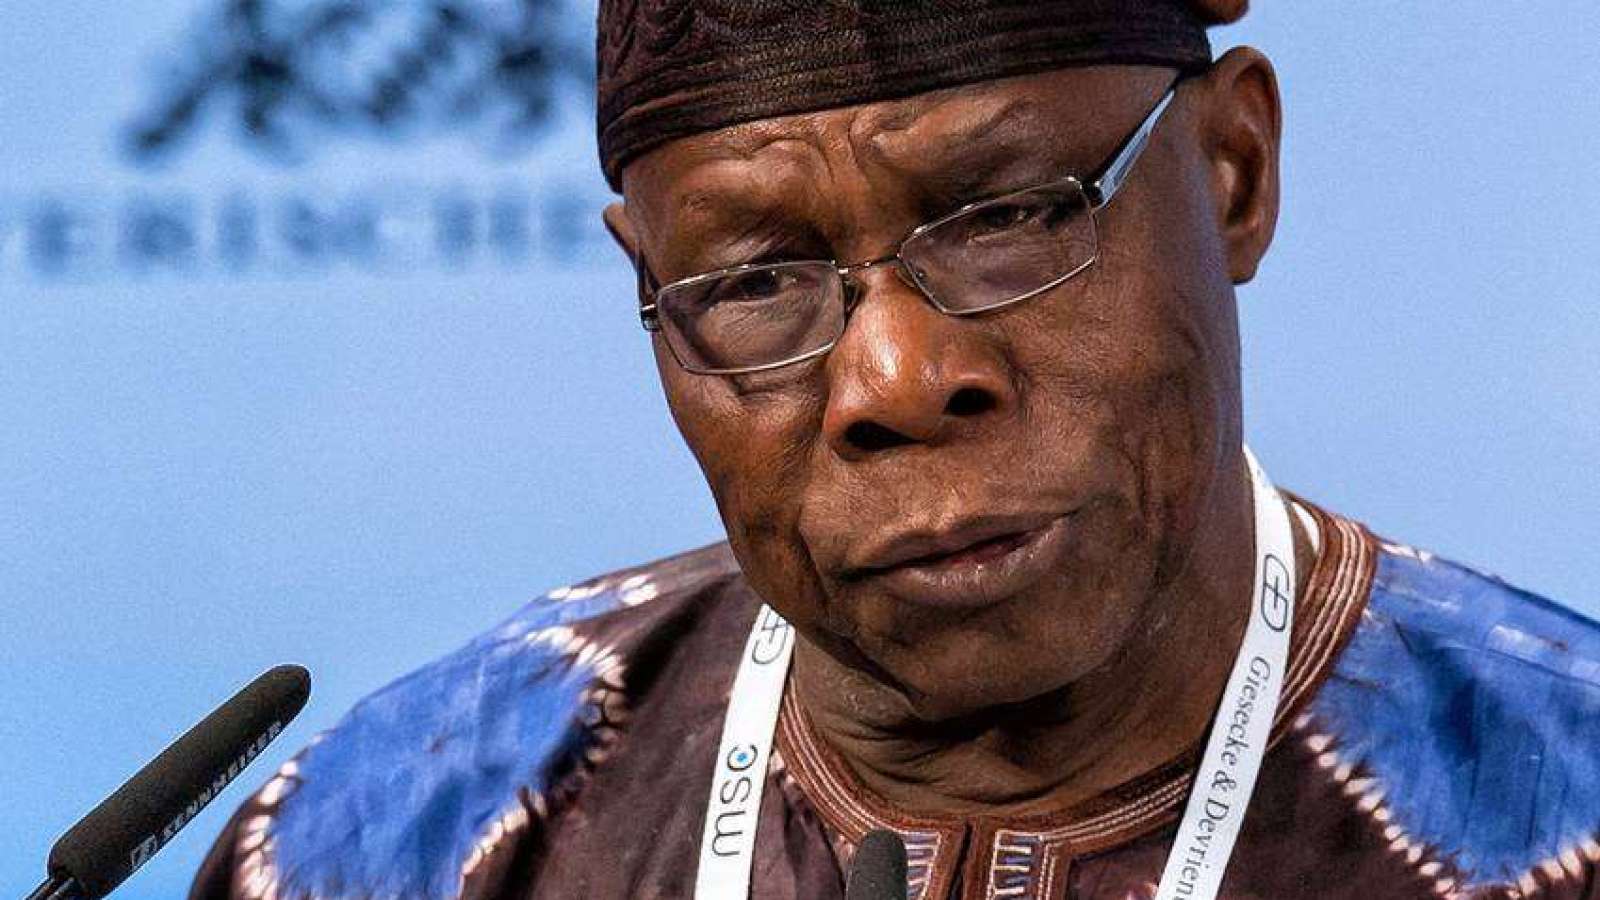 'Mind Your Business' – Presidency Fires Back At Obasanjo